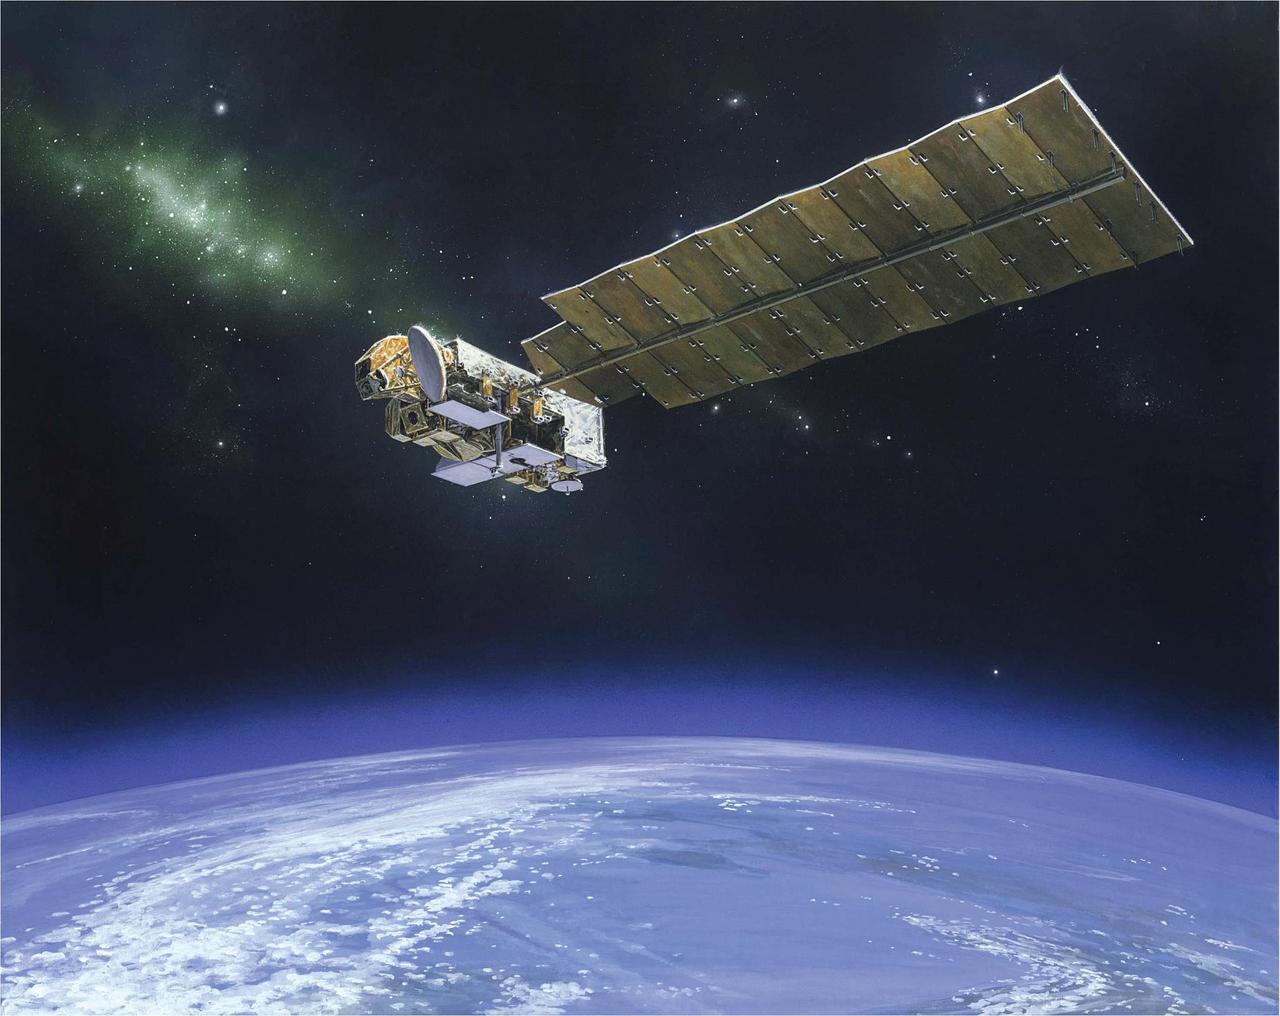 La nave espacial Aura es una misión de química atmosférica de la NASA que monitorea la atmósfera protectora de la Tierra. NASA.